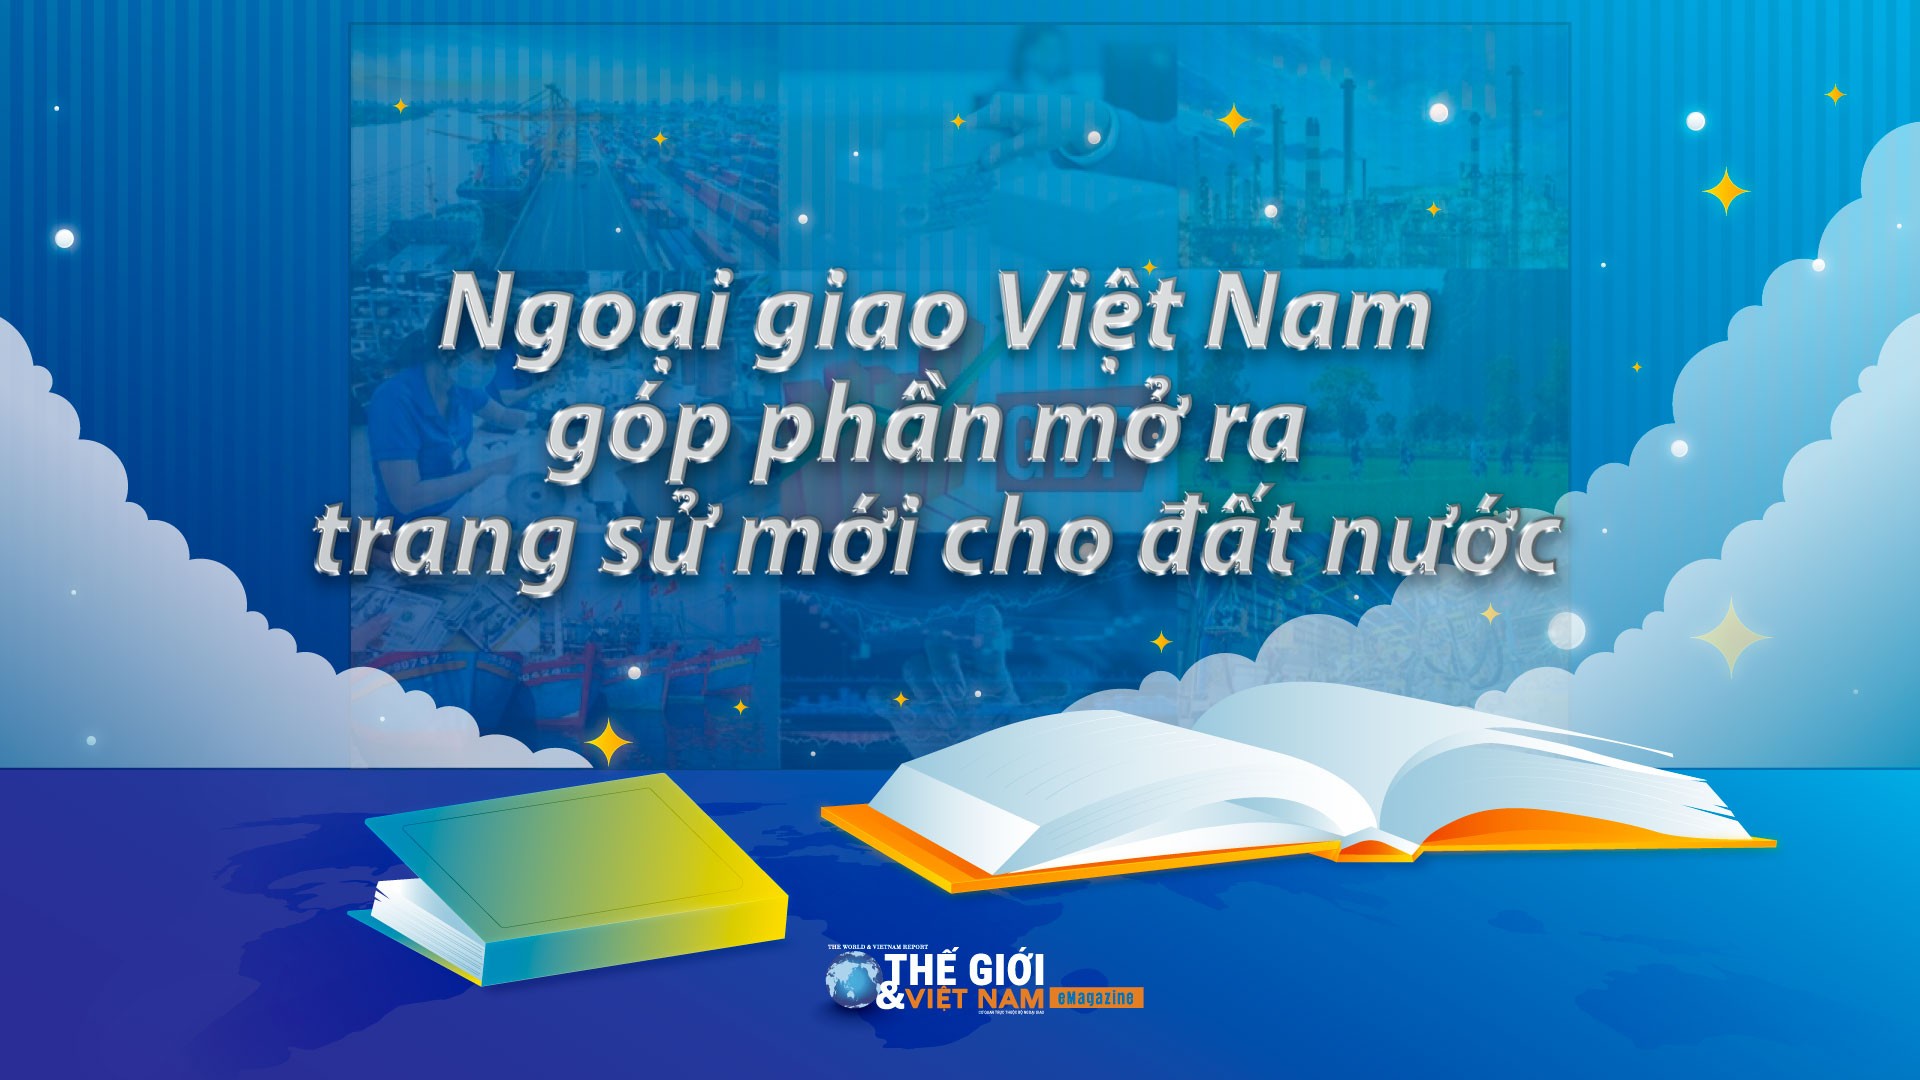 Ngoại giao Việt Nam góp phần mở ra trang sử mới cho đất nước